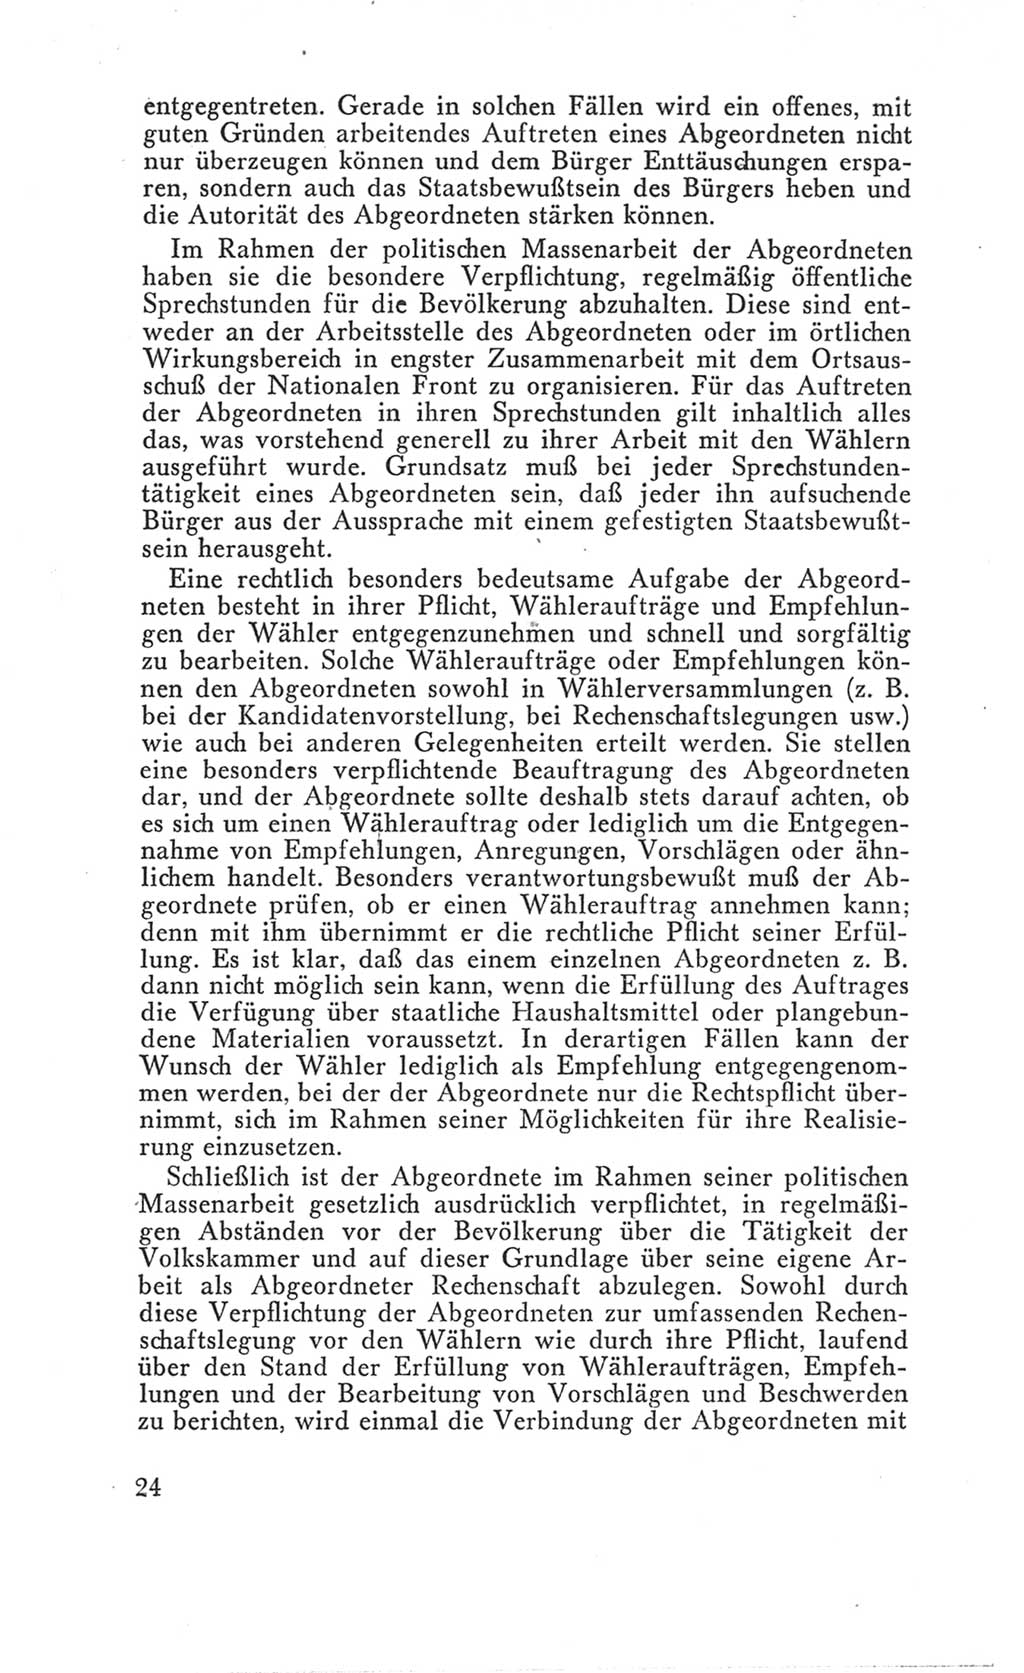 Handbuch der Volkskammer (VK) der Deutschen Demokratischen Republik (DDR), 3. Wahlperiode 1958-1963, Seite 24 (Hdb. VK. DDR 3. WP. 1958-1963, S. 24)